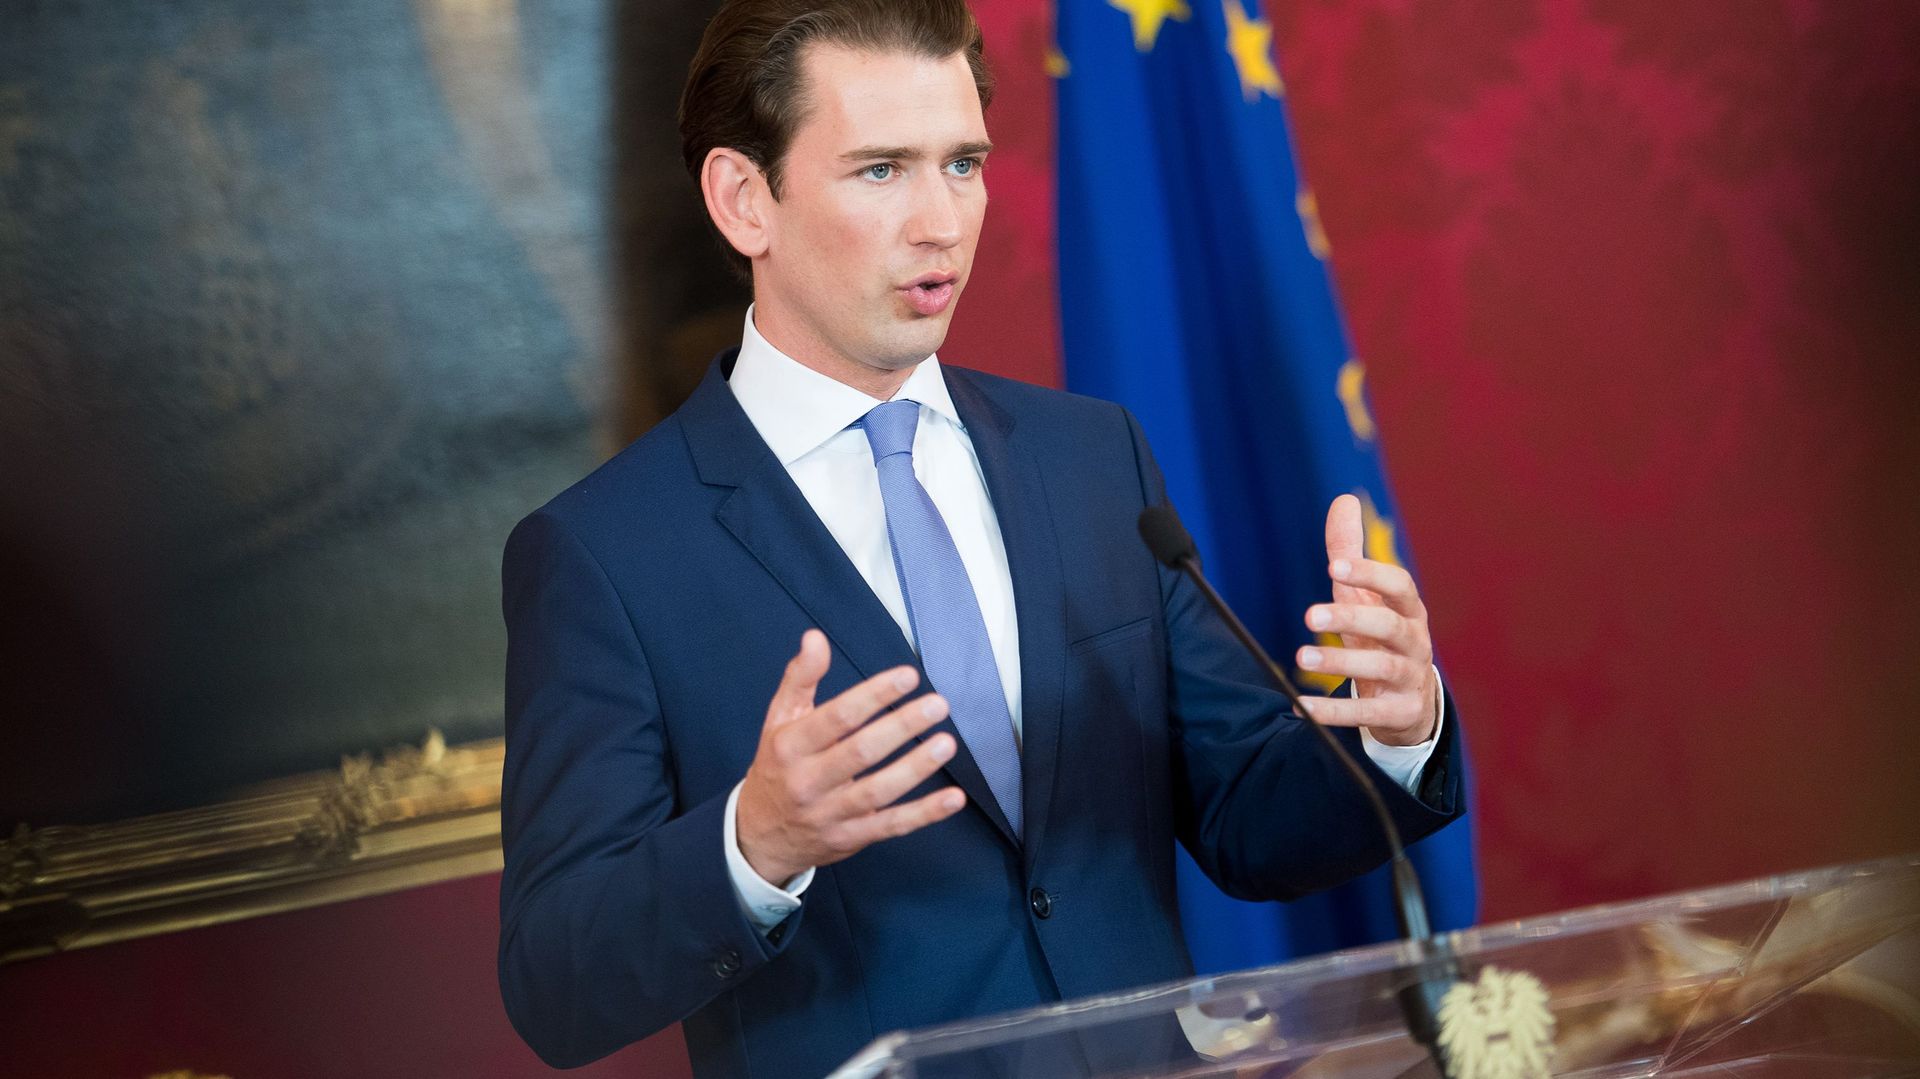 Plan de relance de l’UE : réservée sur la stratégie, l’Autriche veut néanmoins trouver un "compromis"